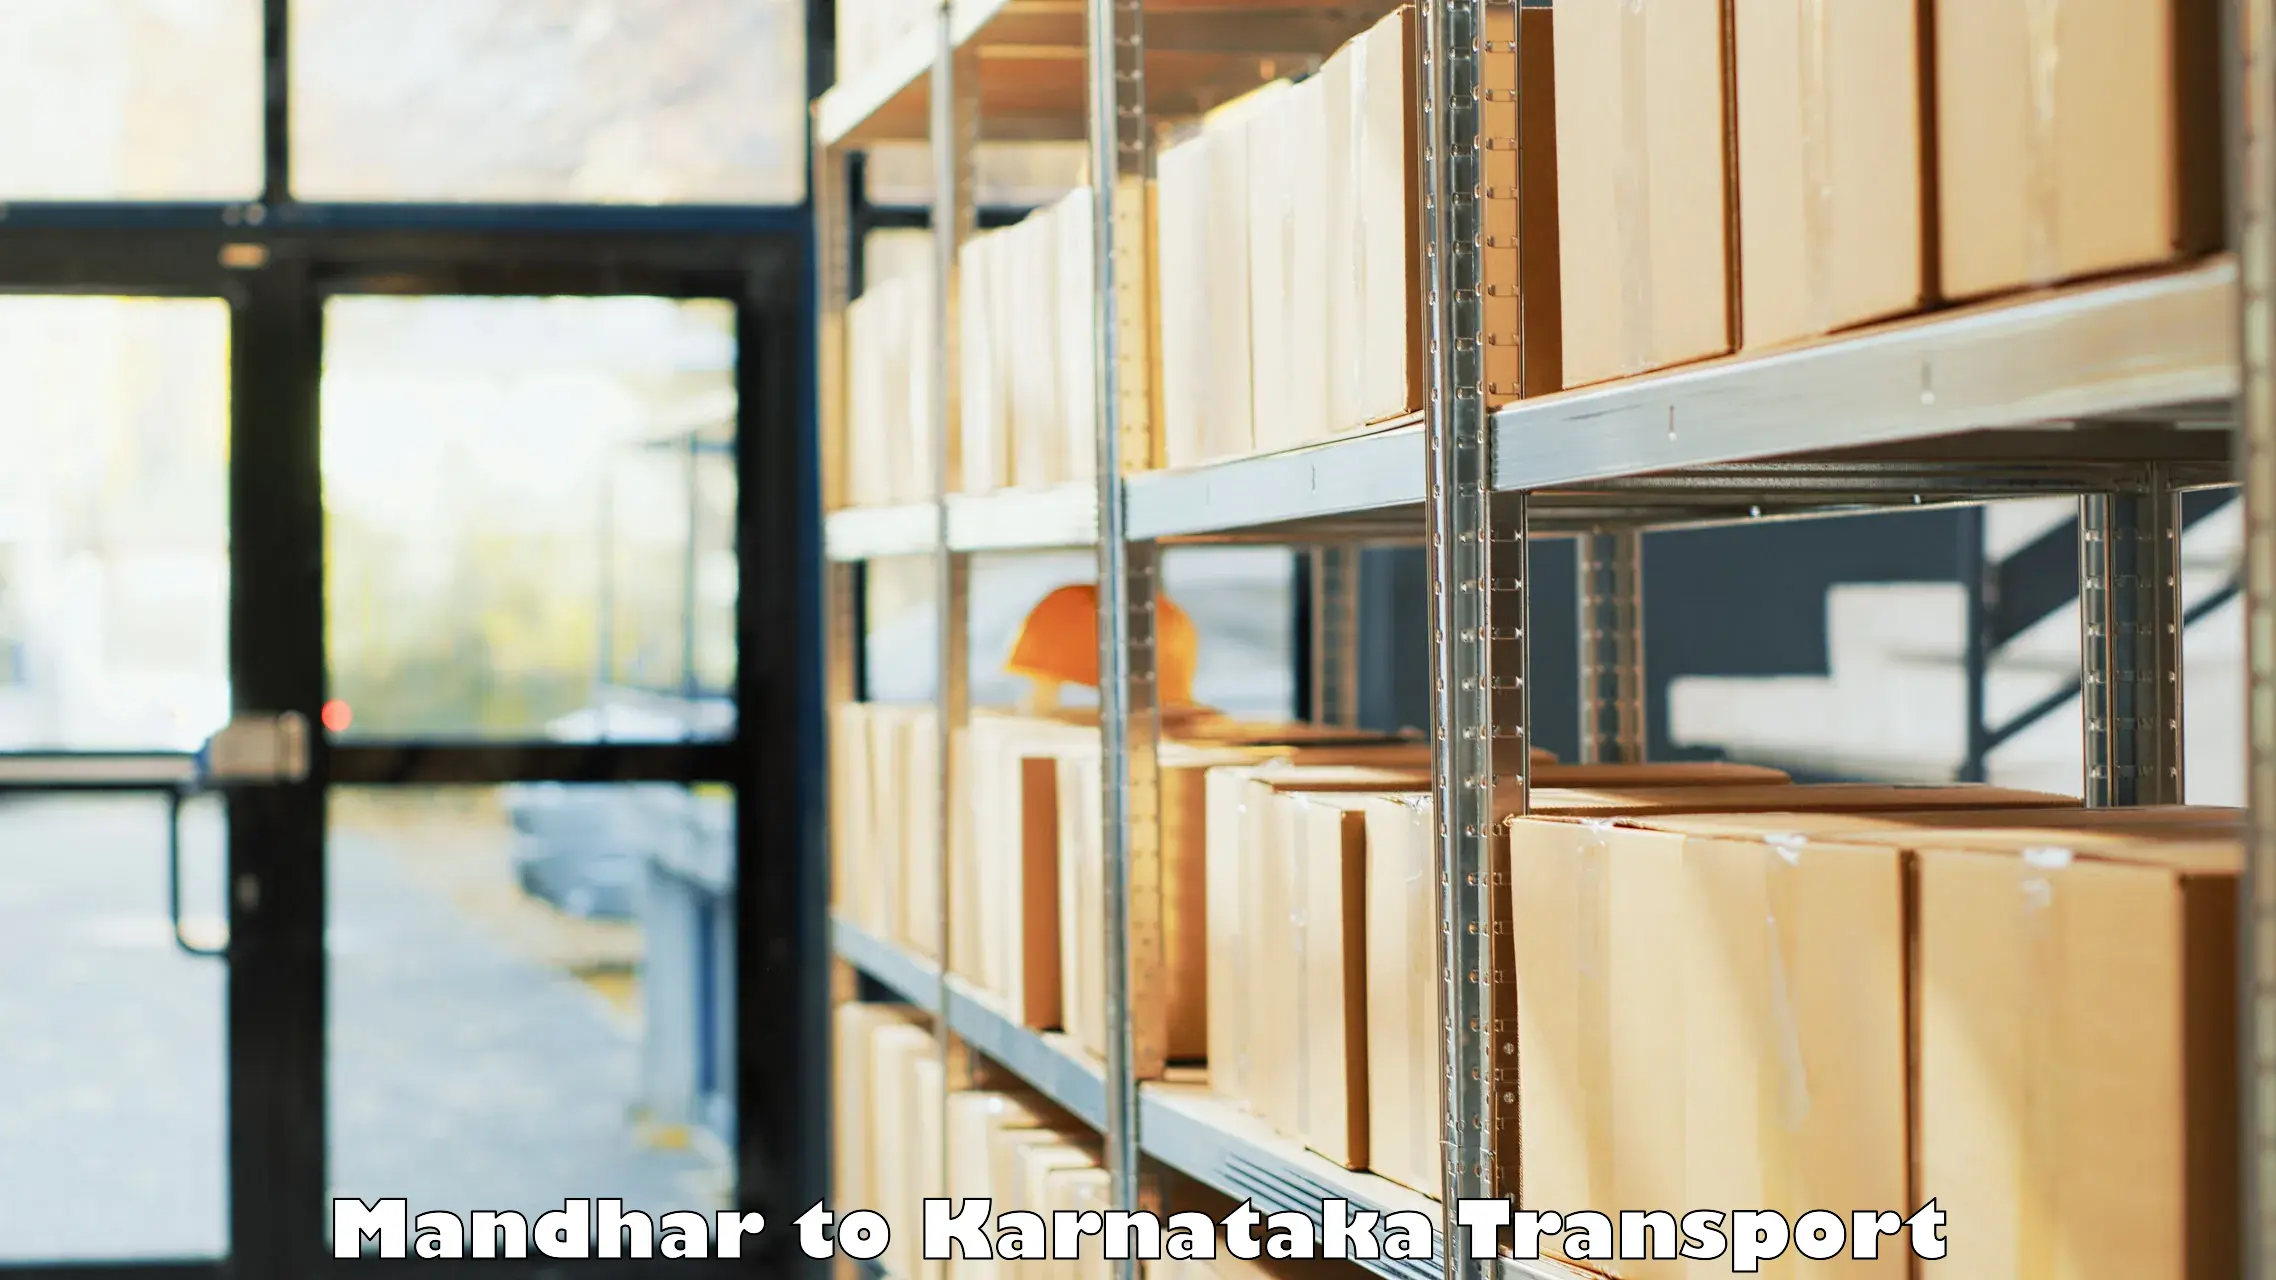 Furniture transport service Mandhar to Kulshekar